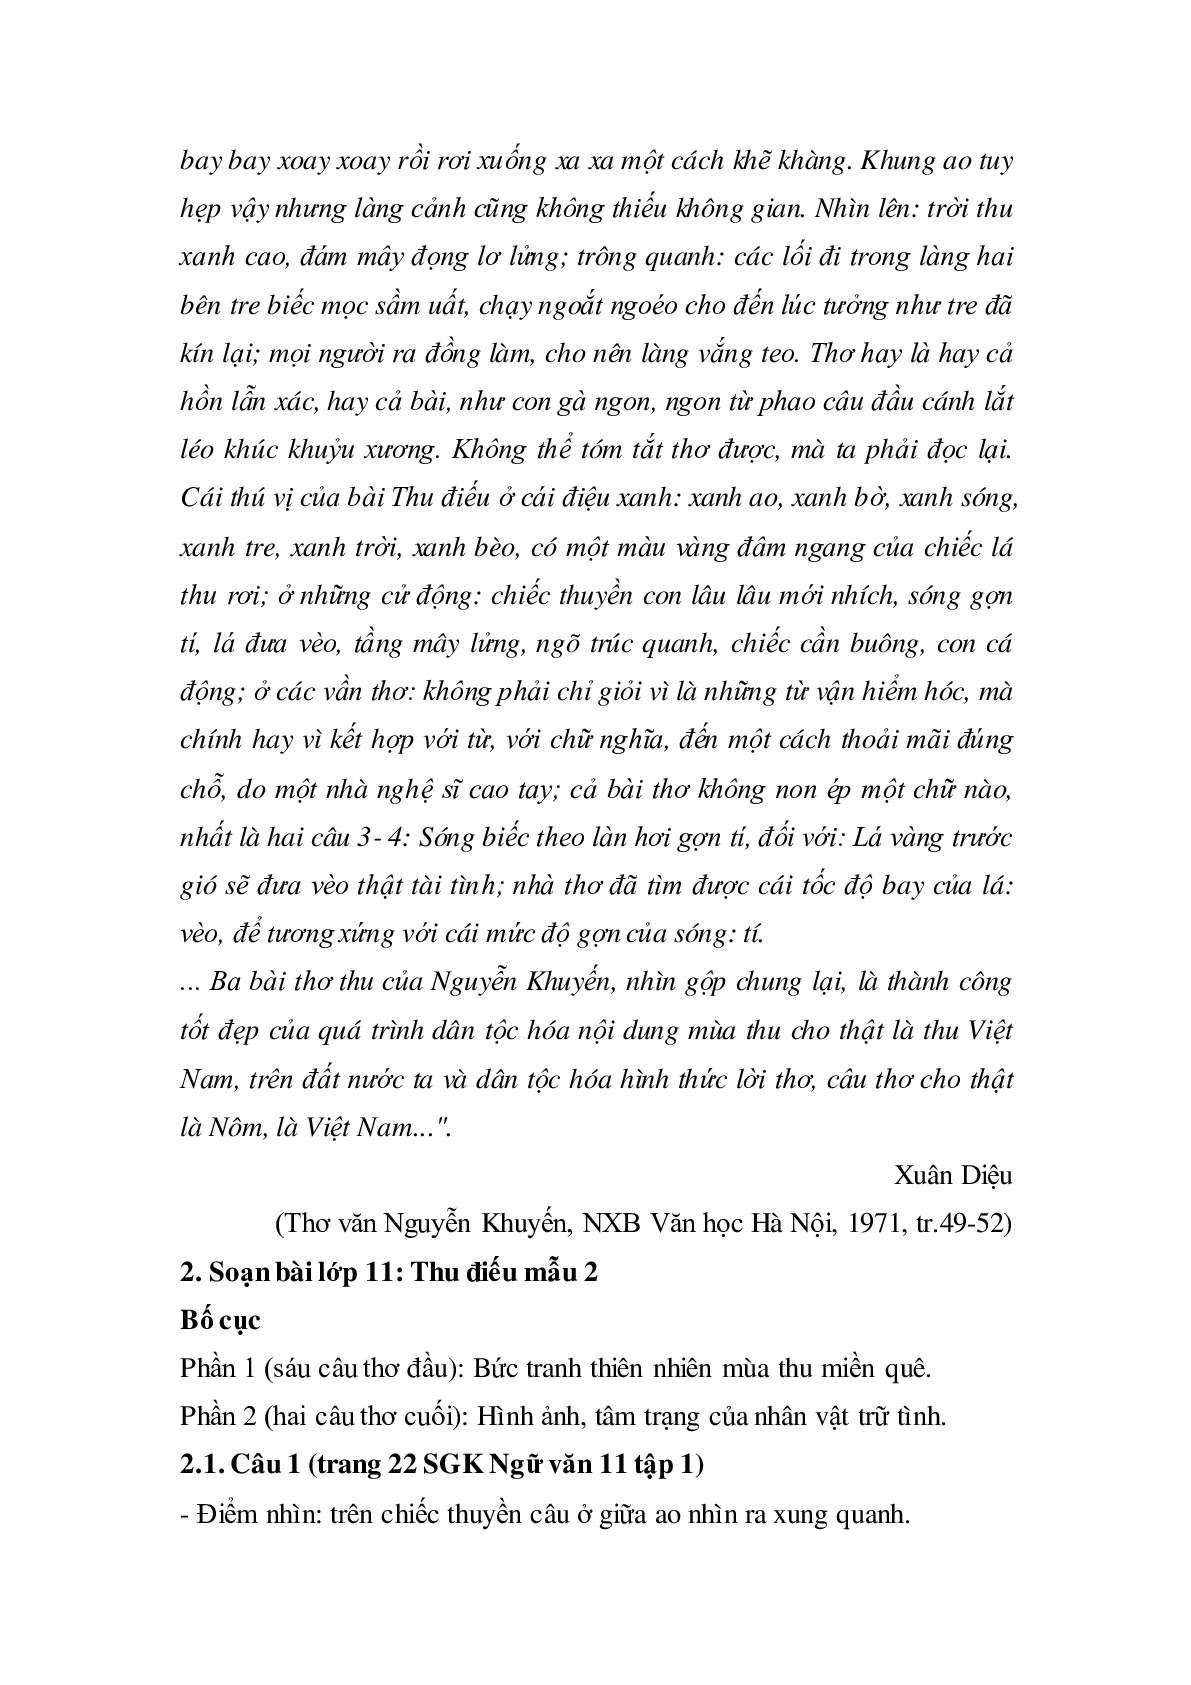 Soạn bài Thu điếu - ngắn nhất Soạn văn 11 (trang 4)